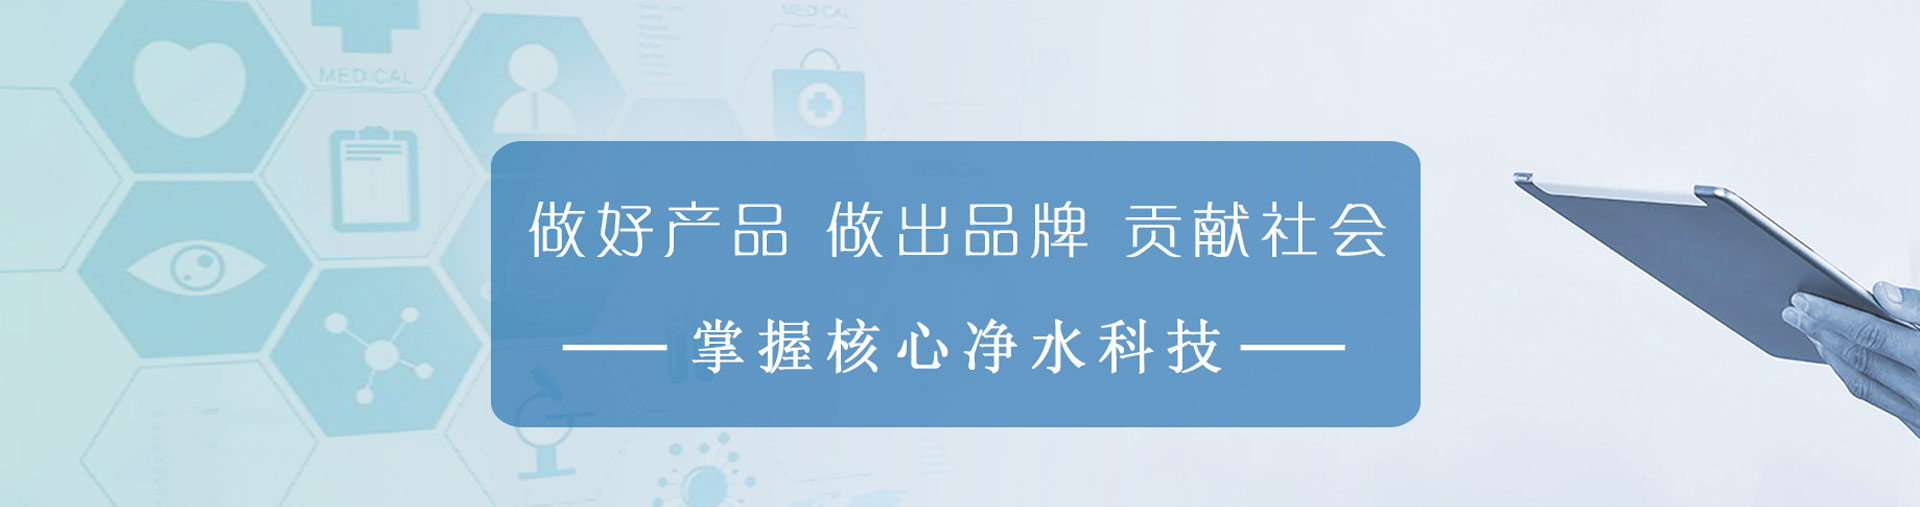 龙8-long8(中国)唯一官方网站_产品4324